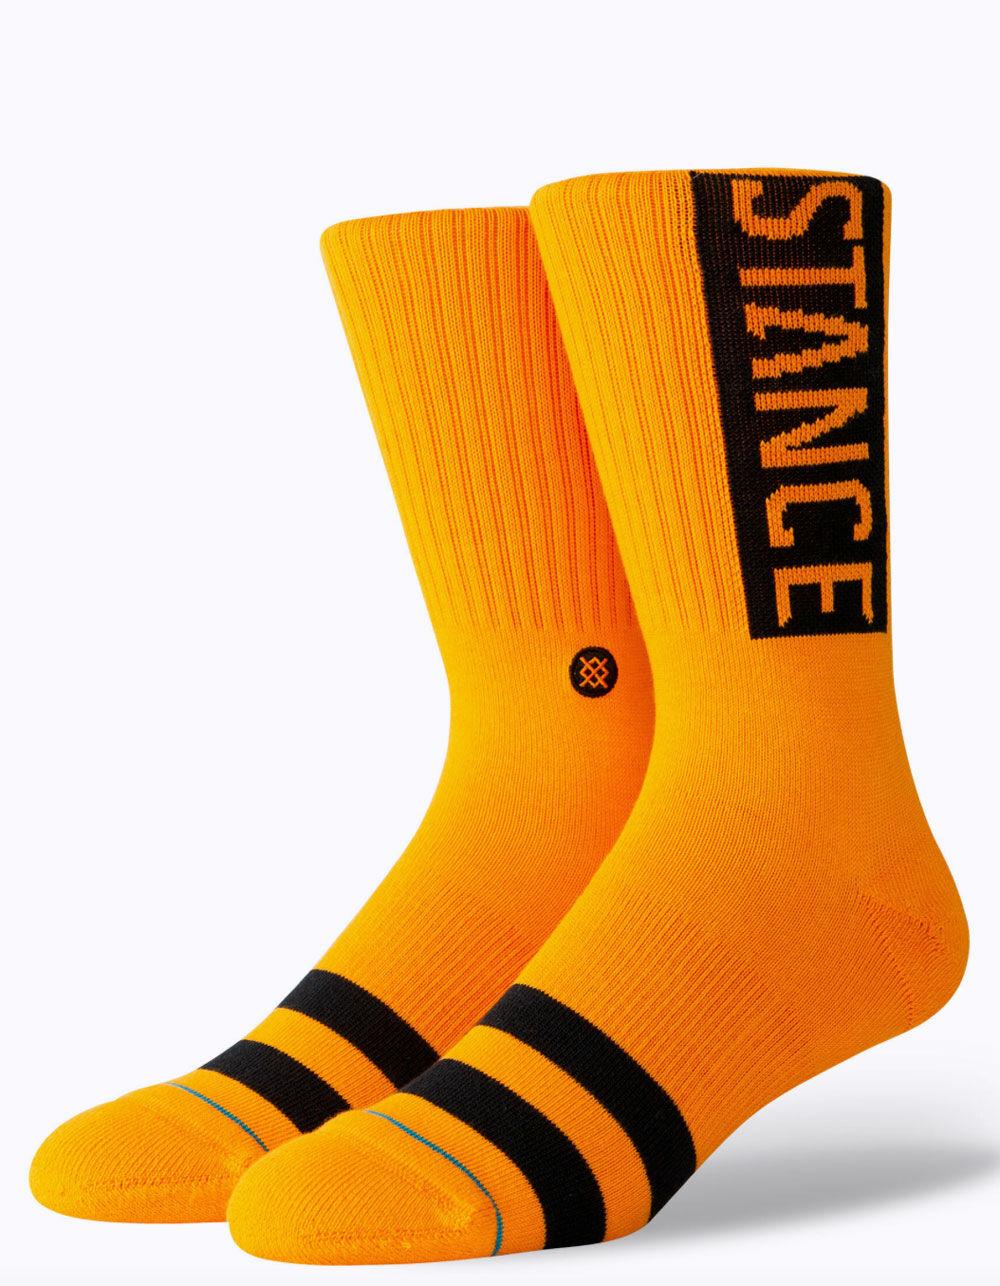 Stance Cotton Og Tangerine Mens Crew Socks in Orange for Men - Lyst